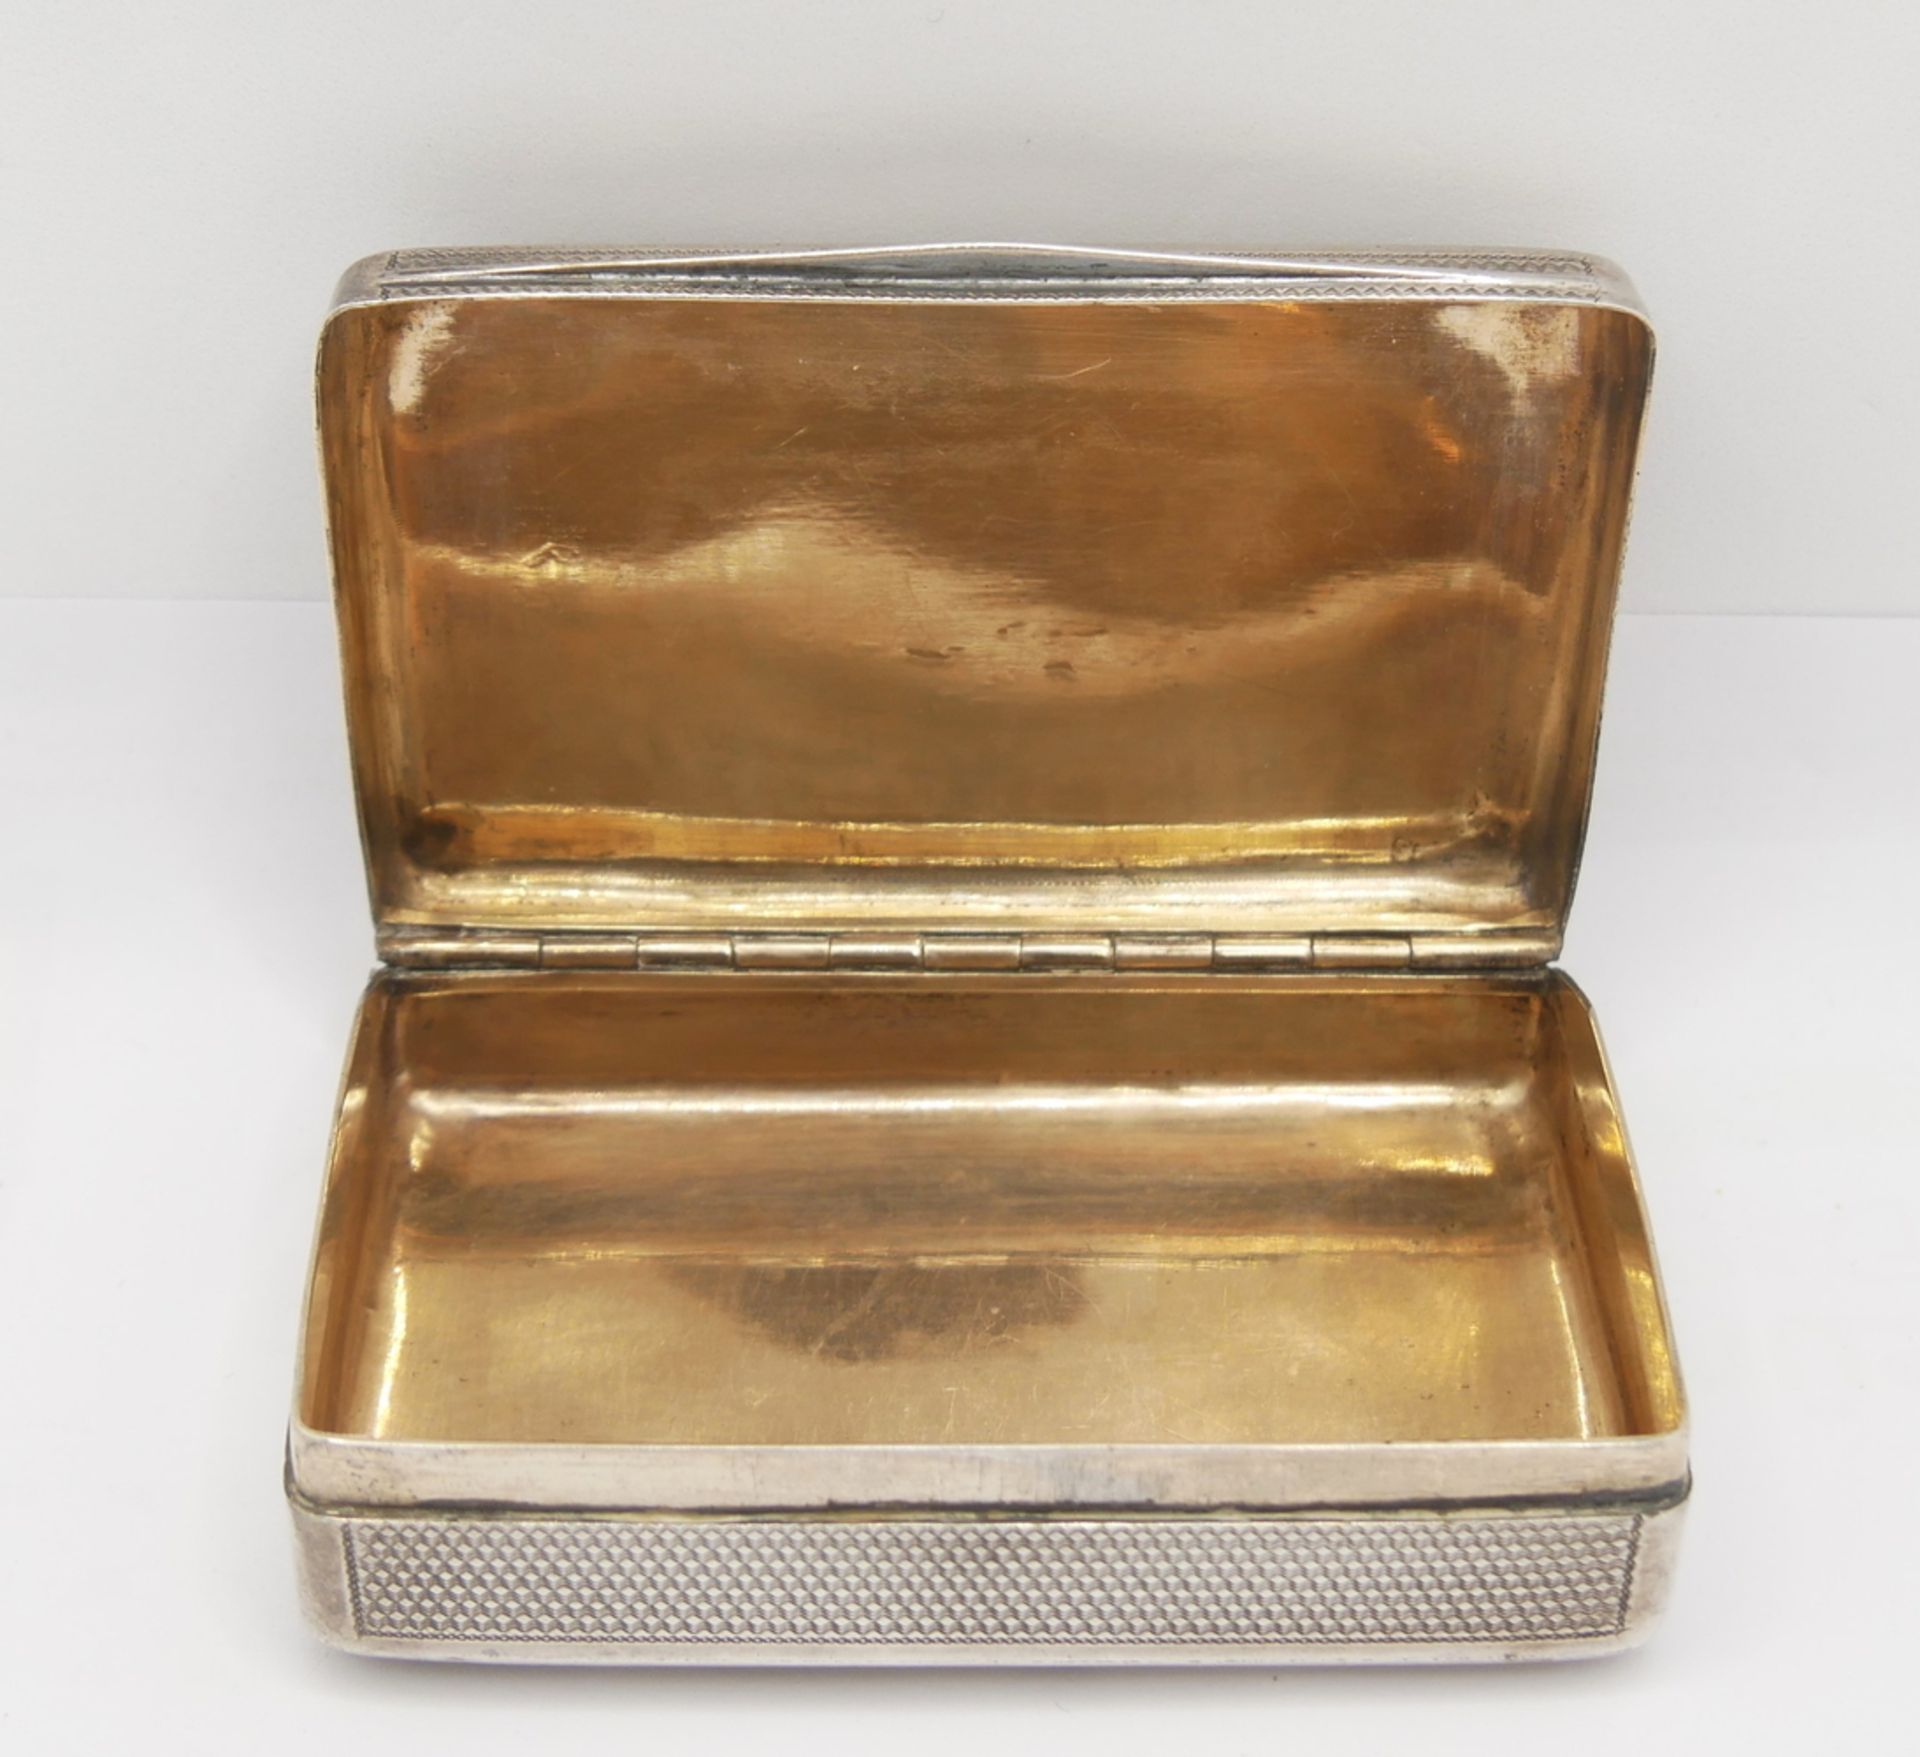 925er Silberdose mit Achat Einlage. Länge ca. 8,5 cm, Höhe ca. 2 cm - Image 3 of 4